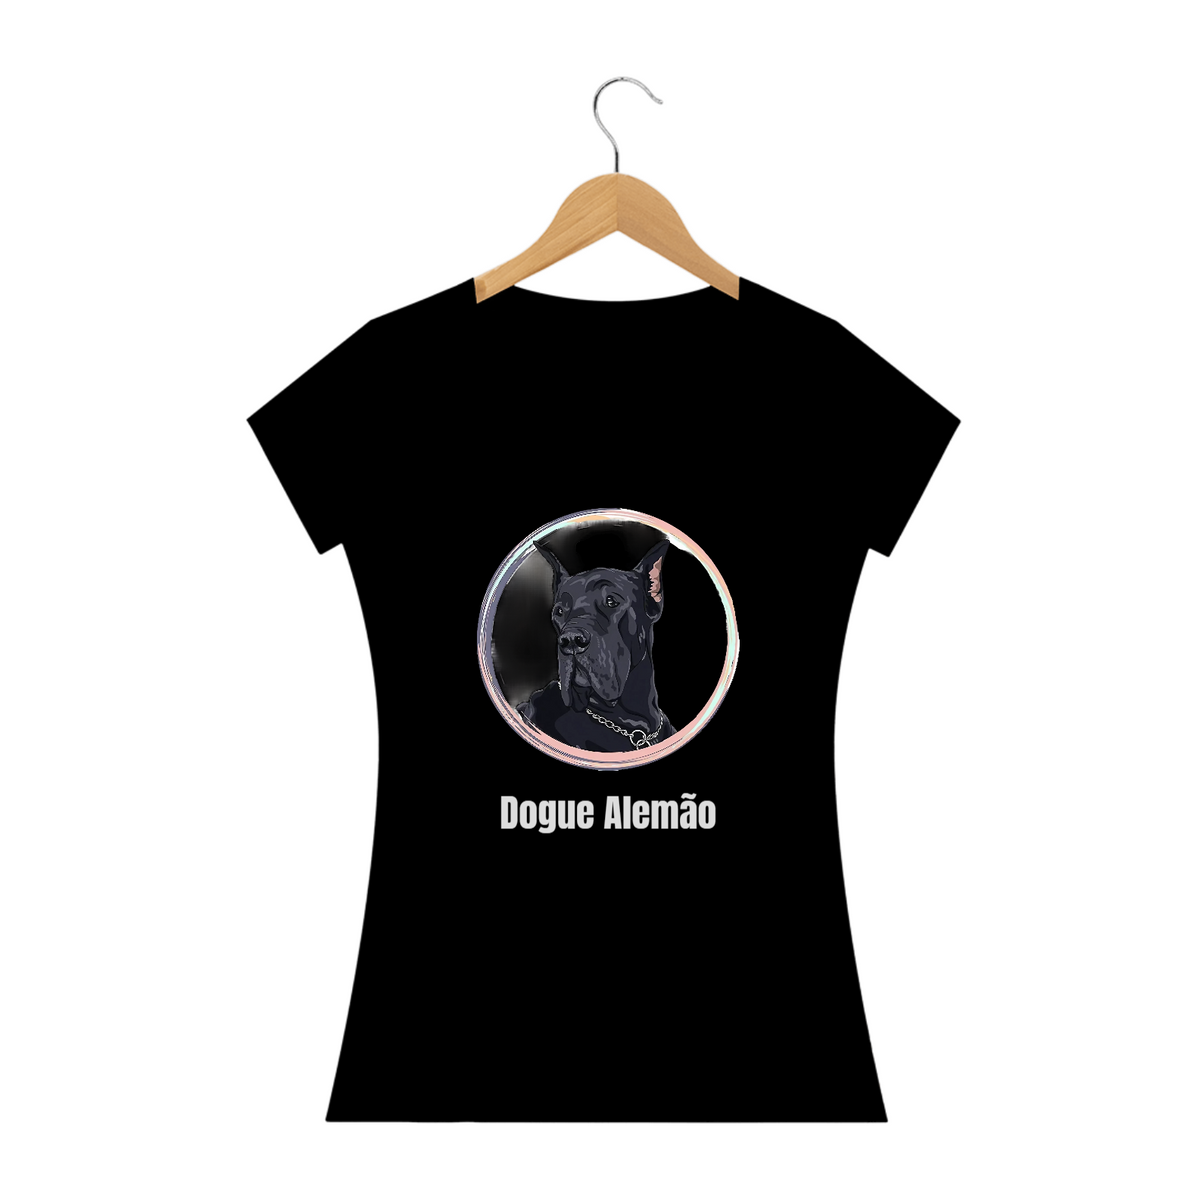 Nome do produto: Dogue Alemão / T-shirt Women Dogue Alemão 